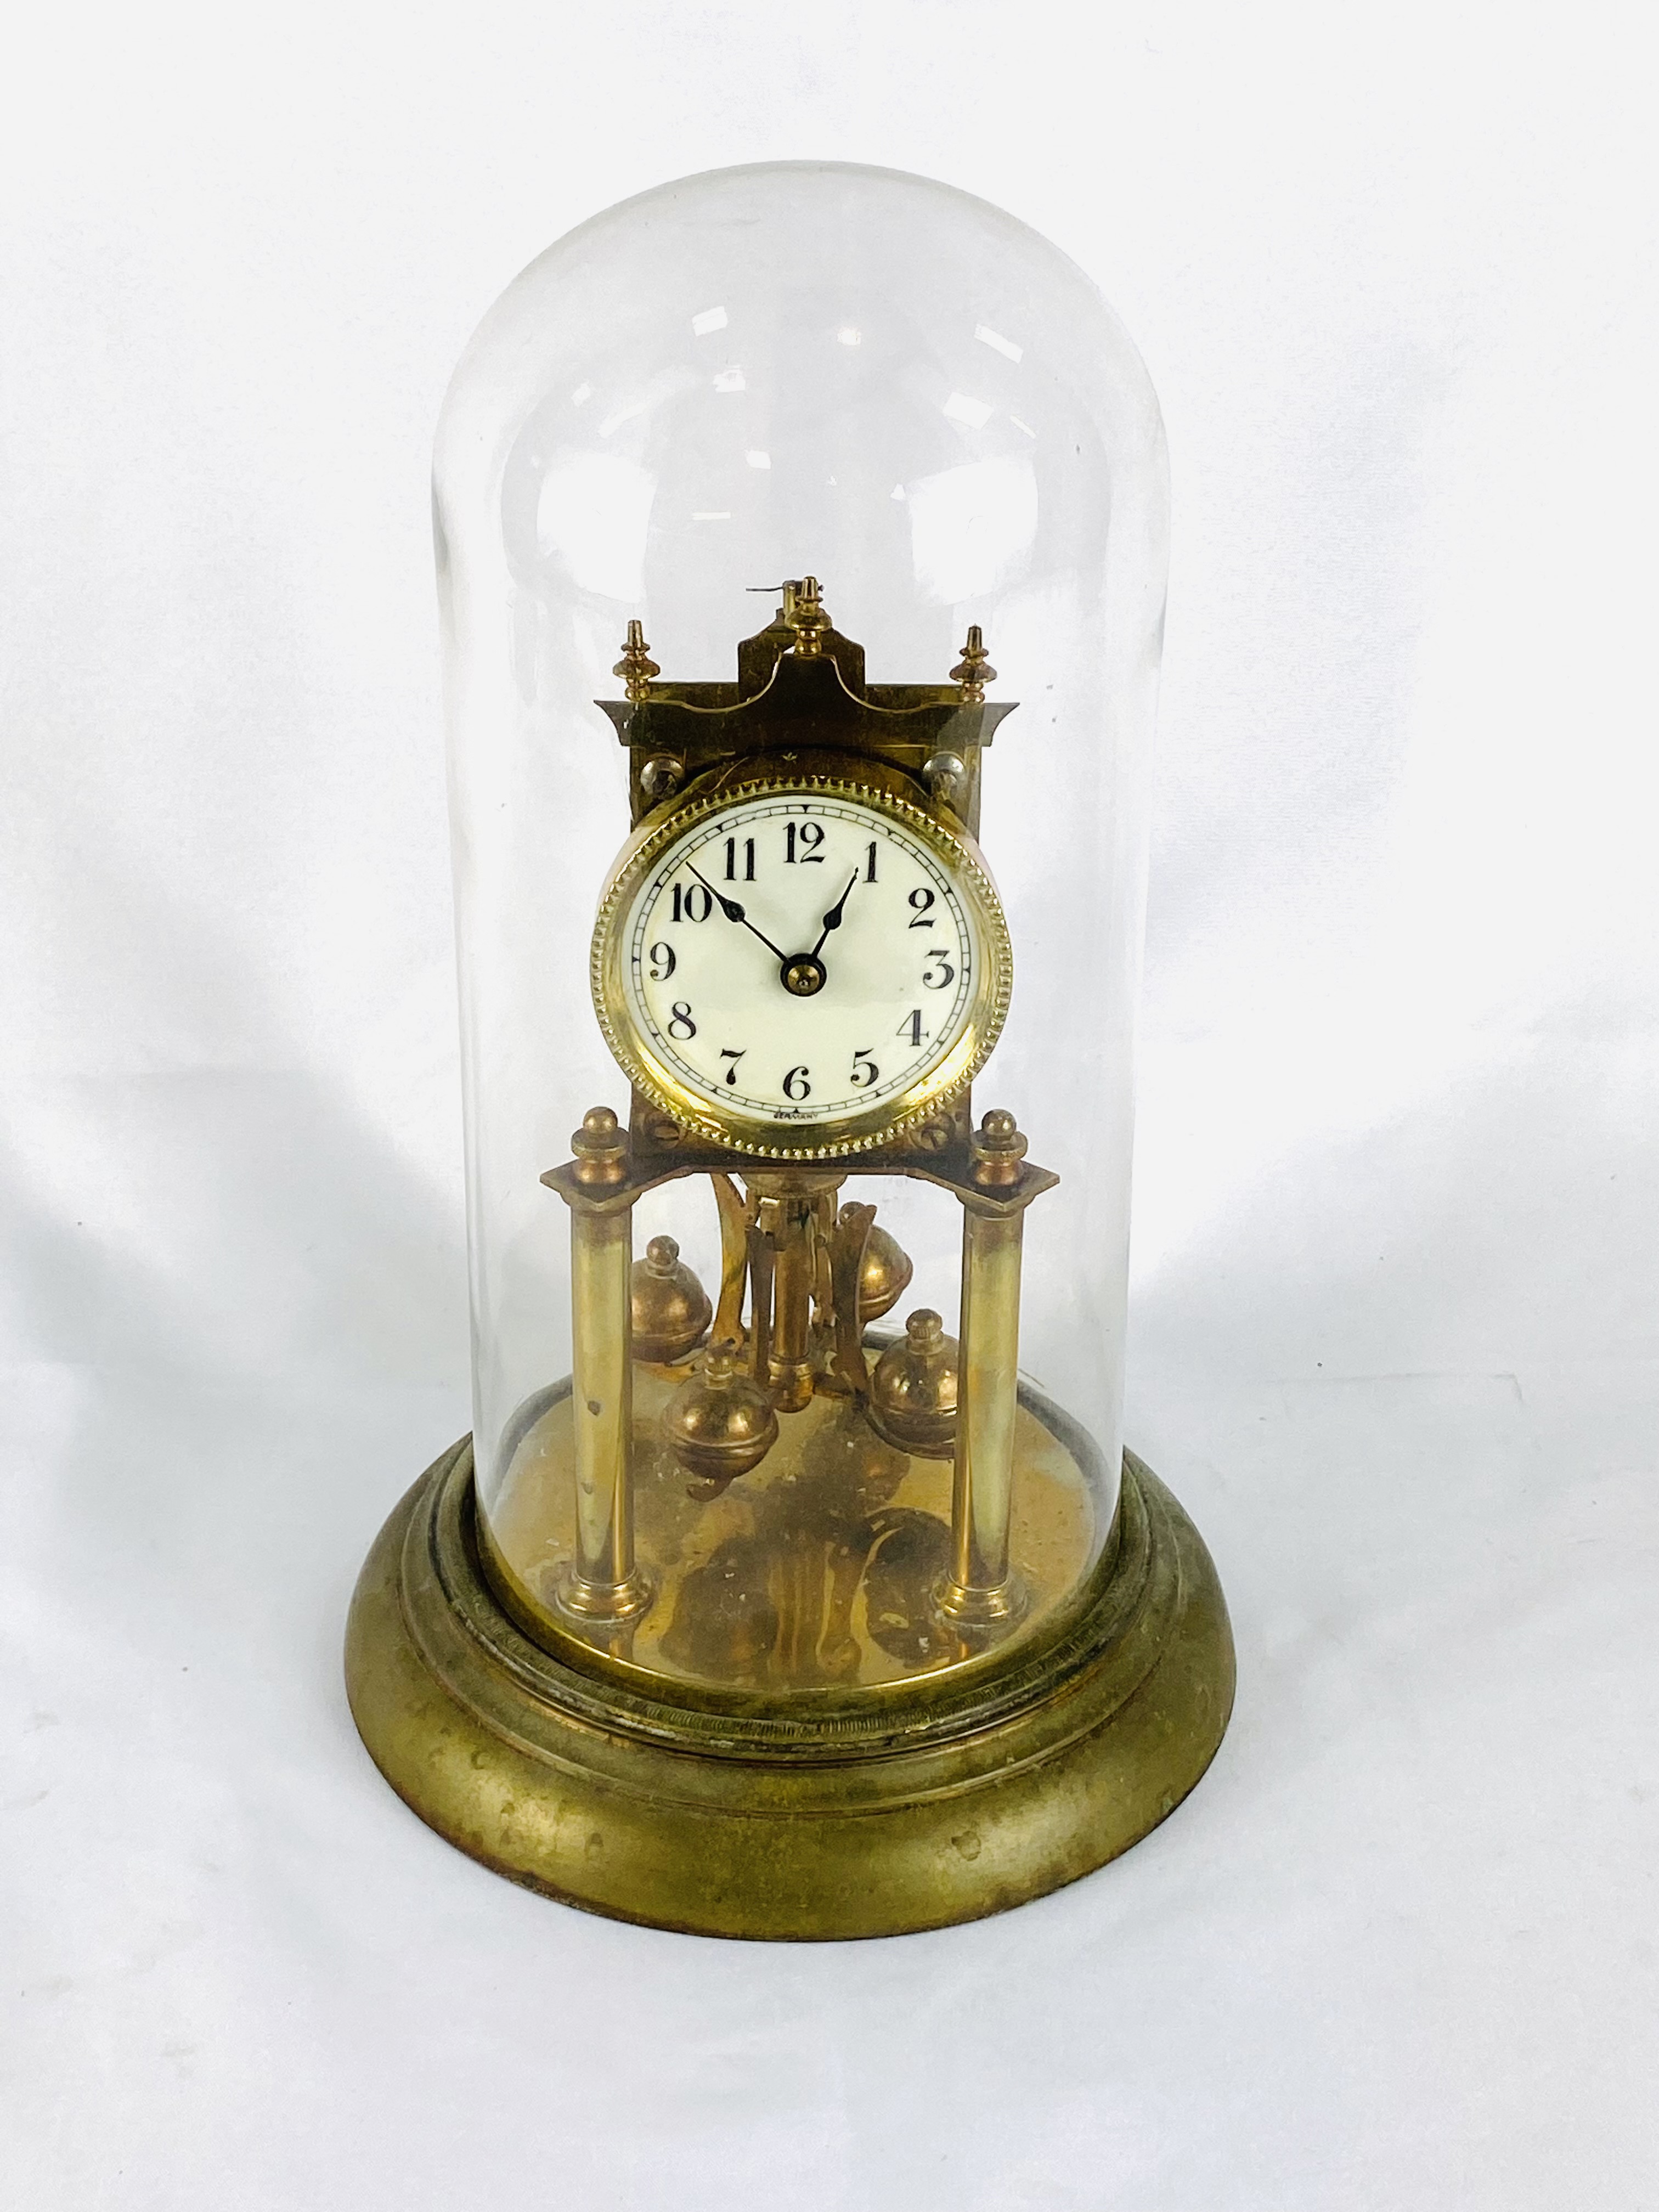 Brass anniversary clock - Image 4 of 4